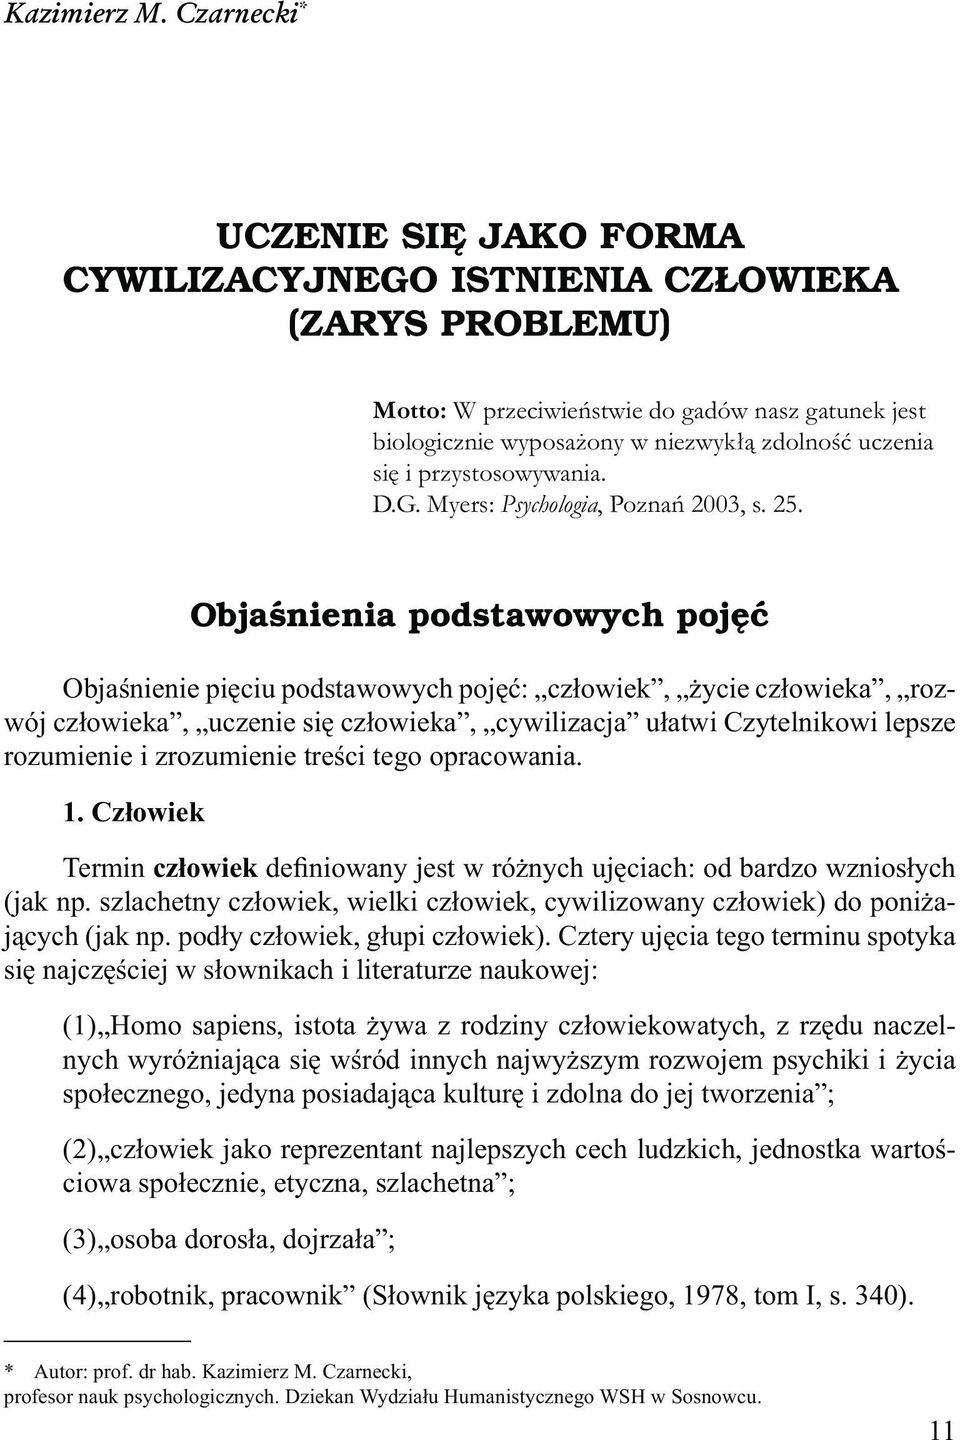 przystosowywania. D.G. Myers: Psychologia, Poznań 2003, s. 25.